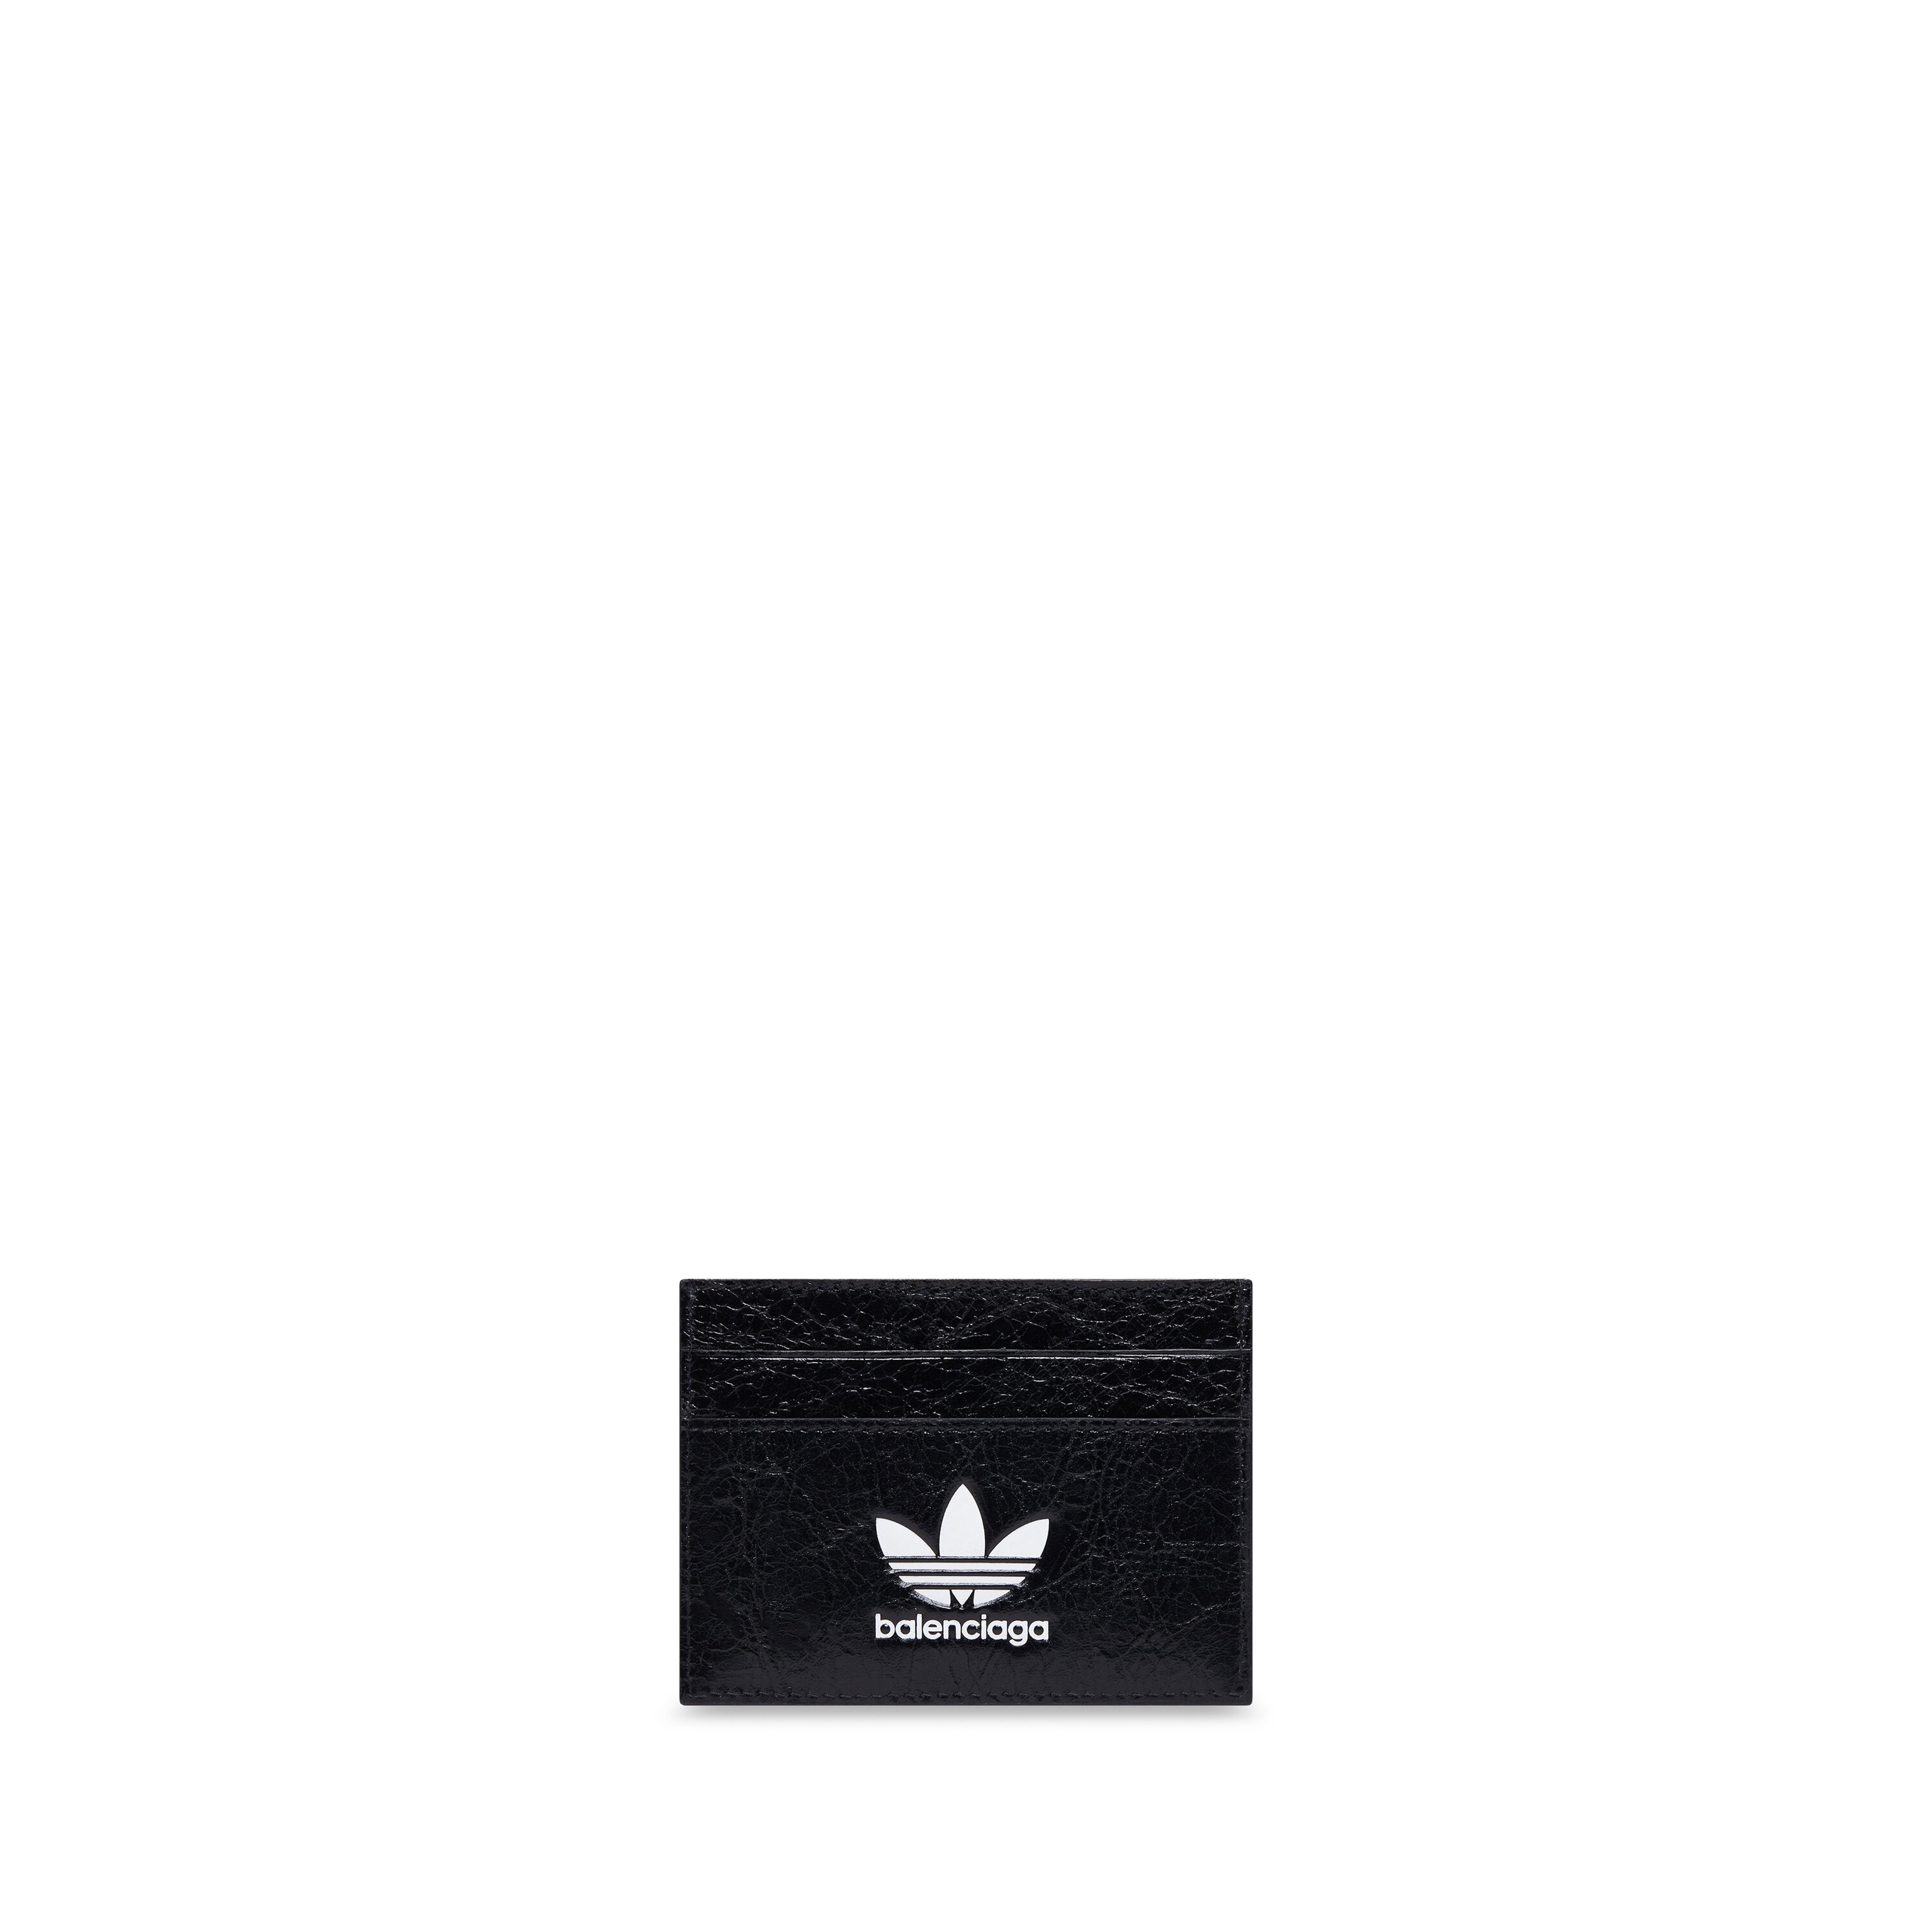 Balenciaga Adidas Men S Adidas Card Holder Black White Dover Street Market E Shop Dsml E Shop